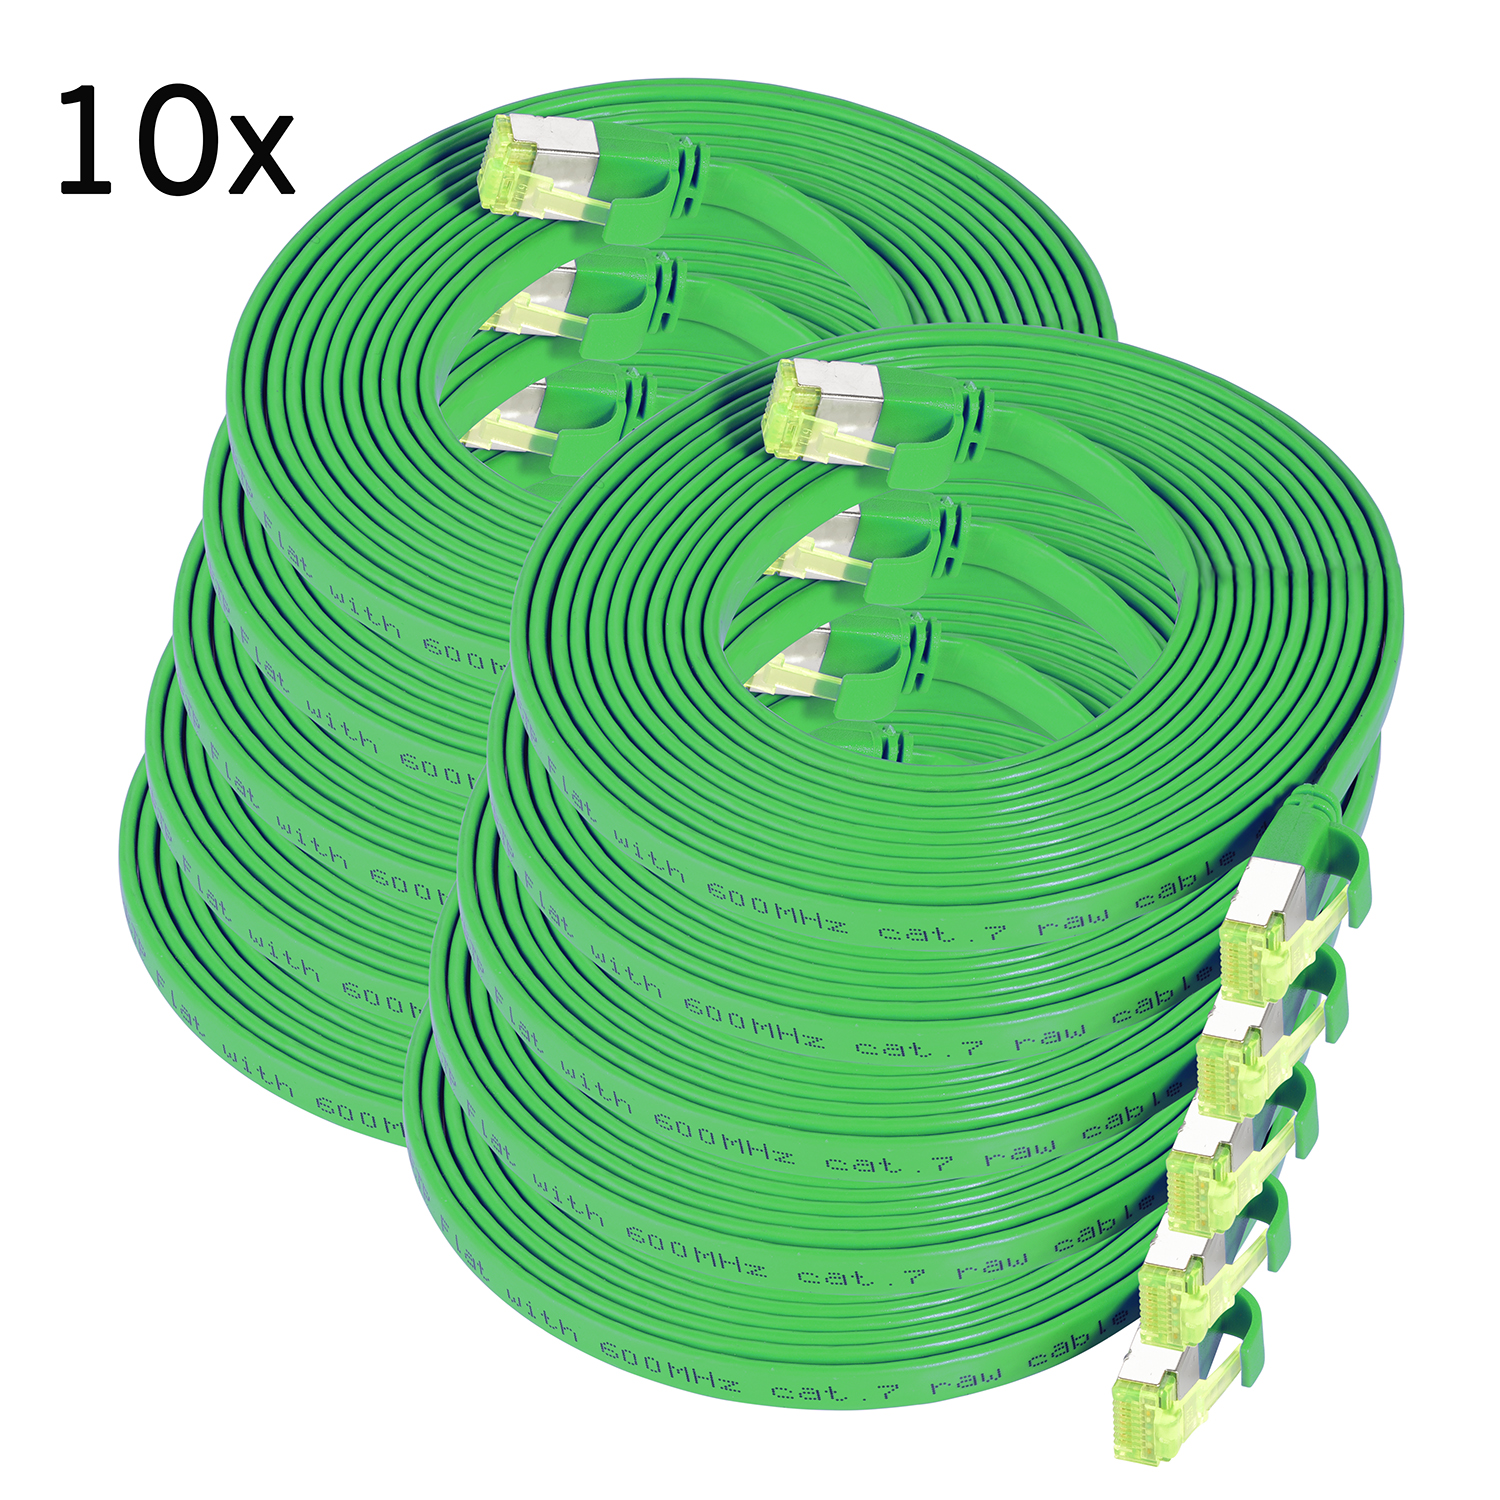 TPFNET 10er / Netzwerkkabel, m grün, 1m 1 GBit, Patchkabel U/FTP Pack 10 Flachkabel